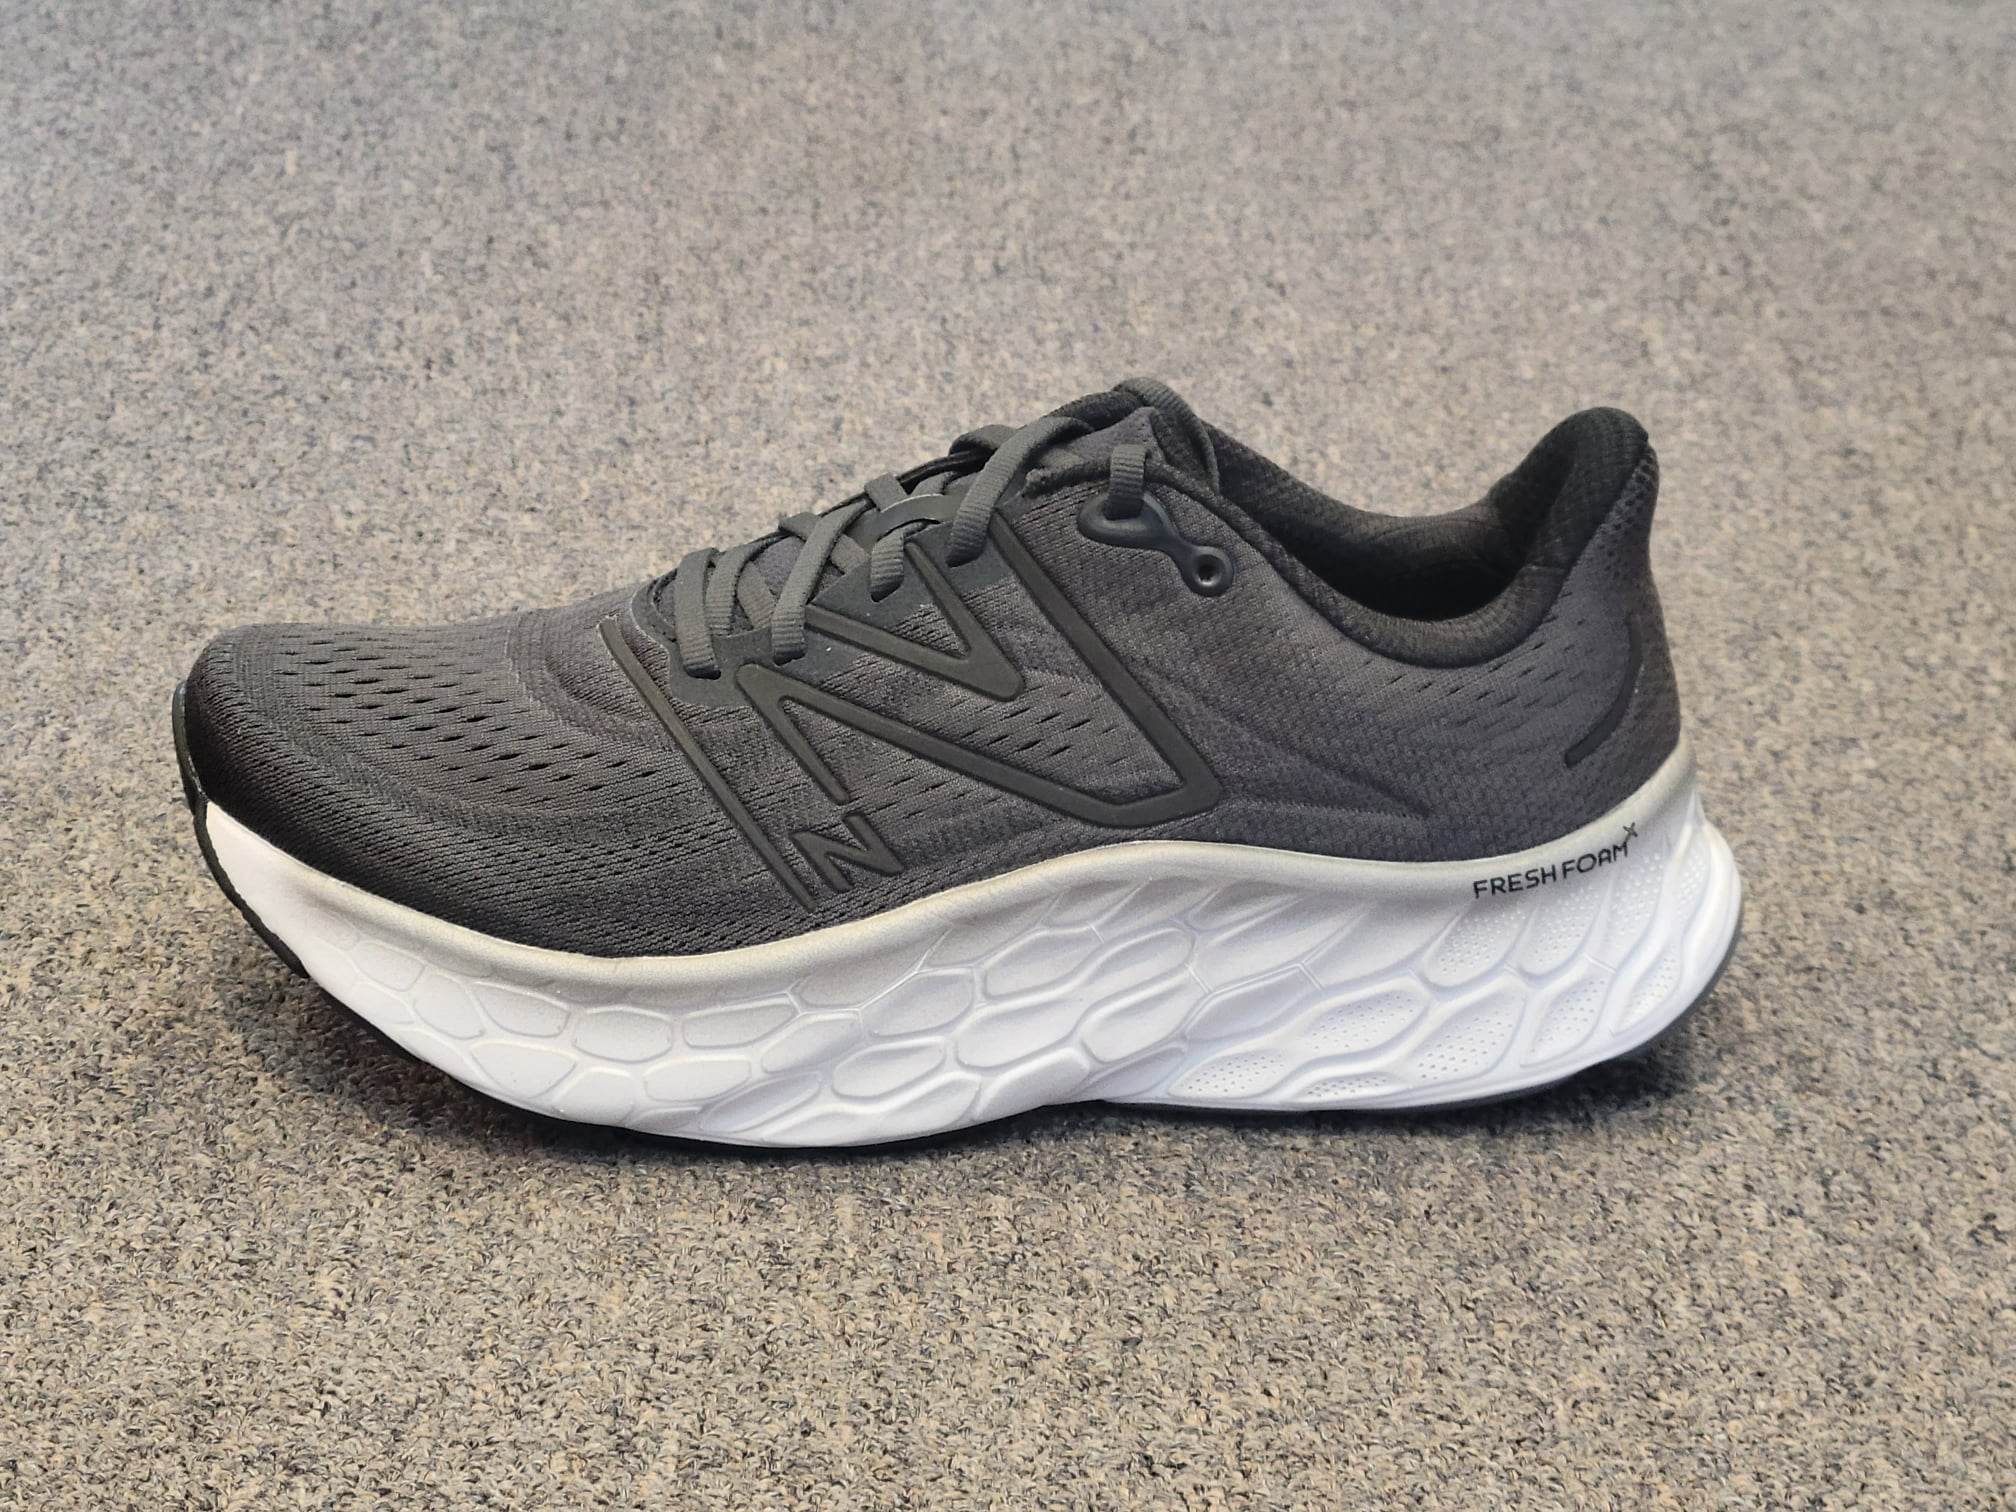 Shoe Review: New Balance Fresh Foam X More V4 Fleet Feet, 53% OFF